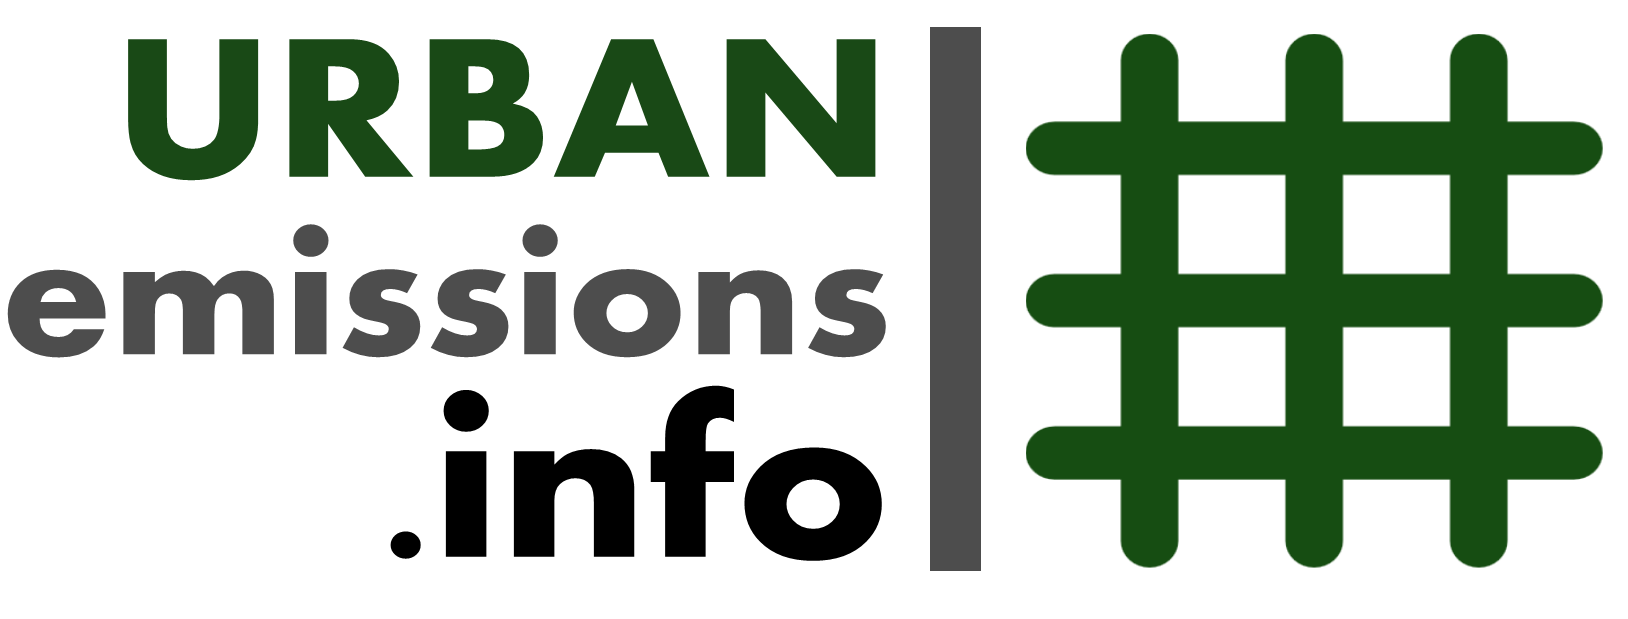 Urban Emissions logo